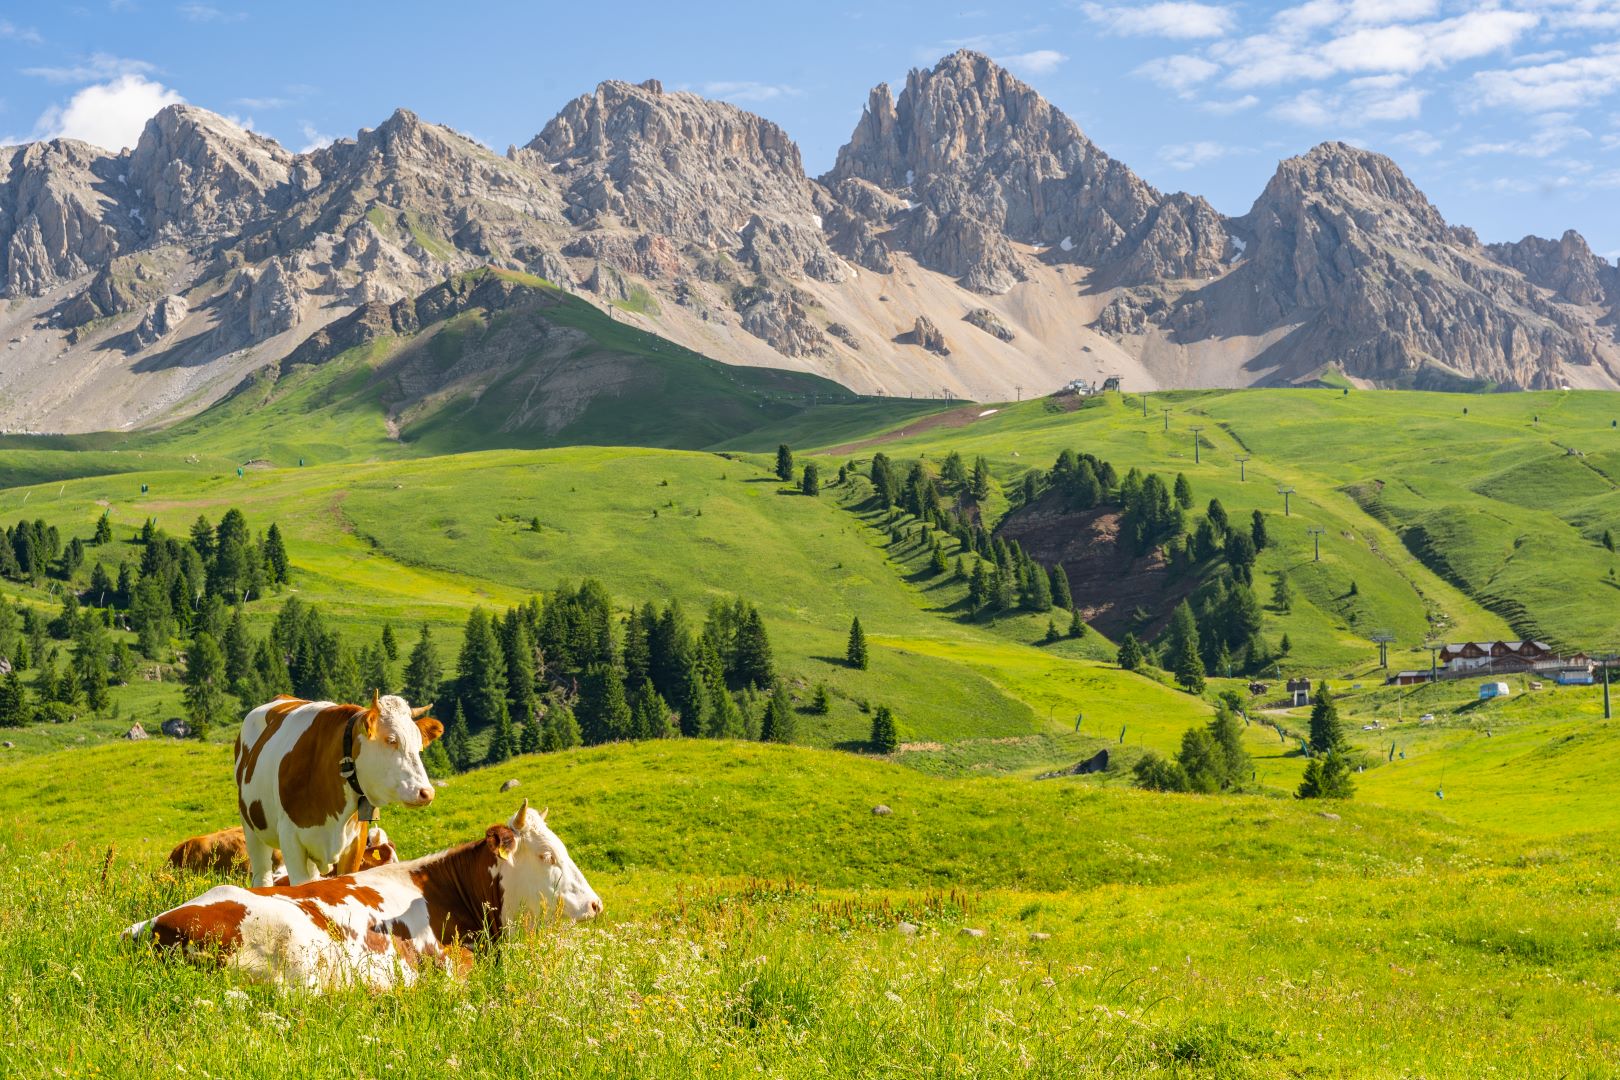 جبال الألب المثالية مع الماشية في المراعي الخضراء